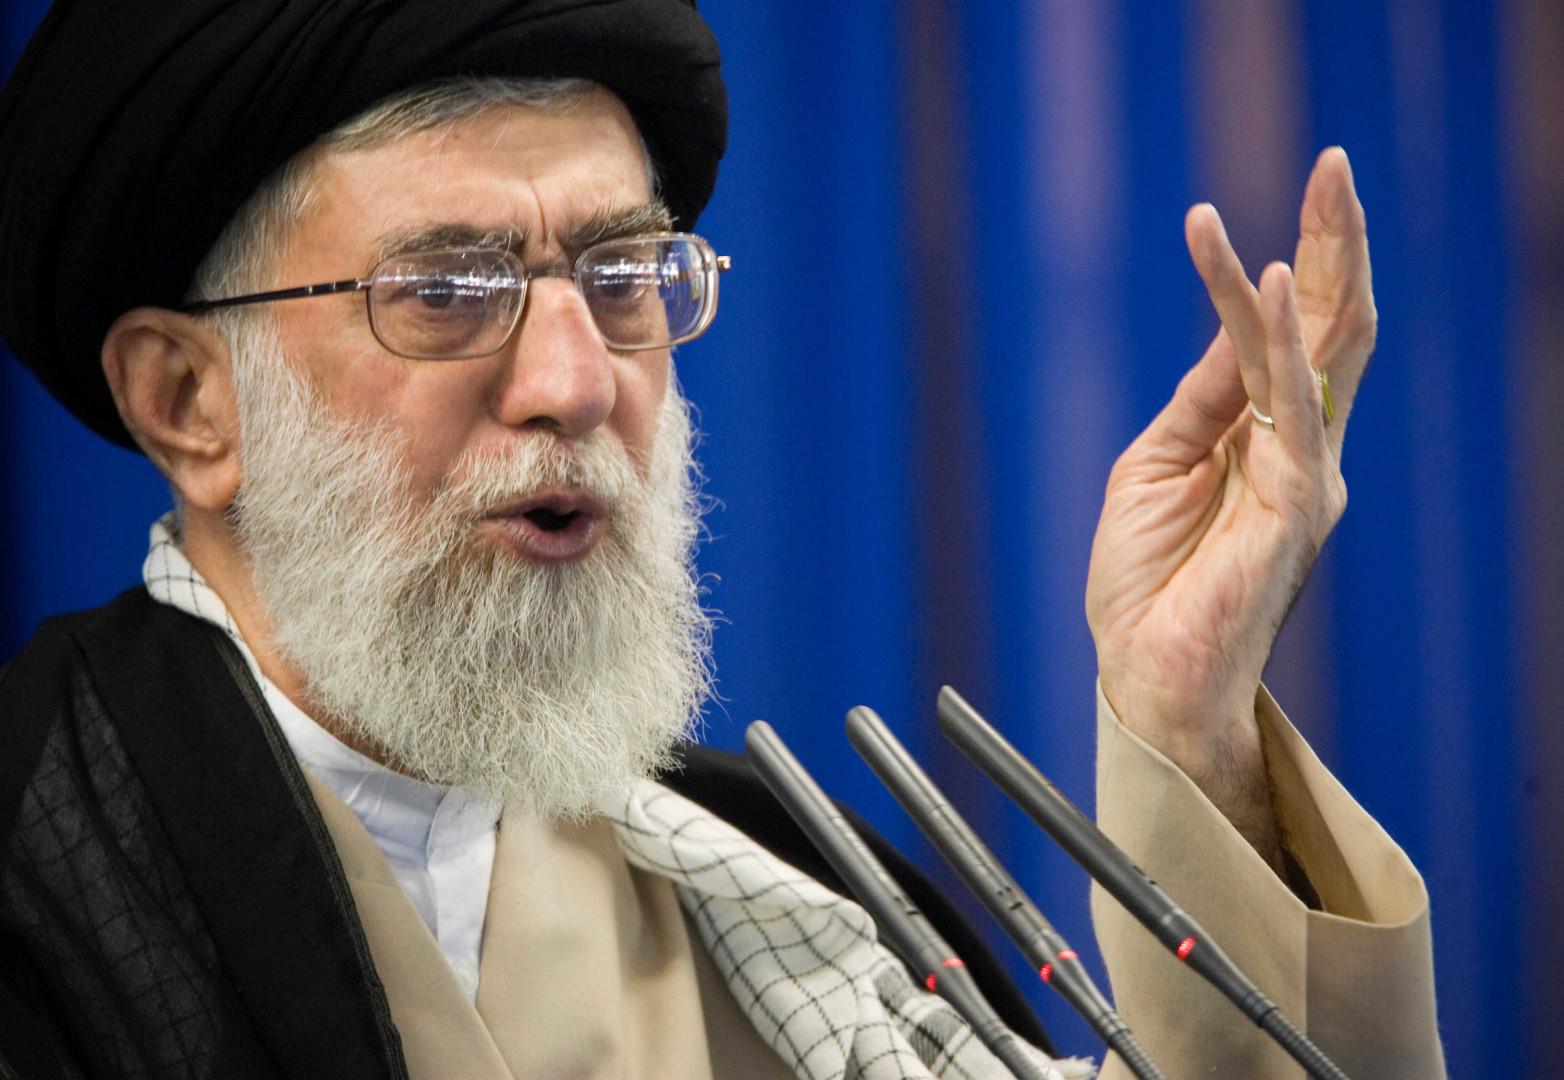 Iranian Supreme Leader orders retaliatory strike against Israel: NYT